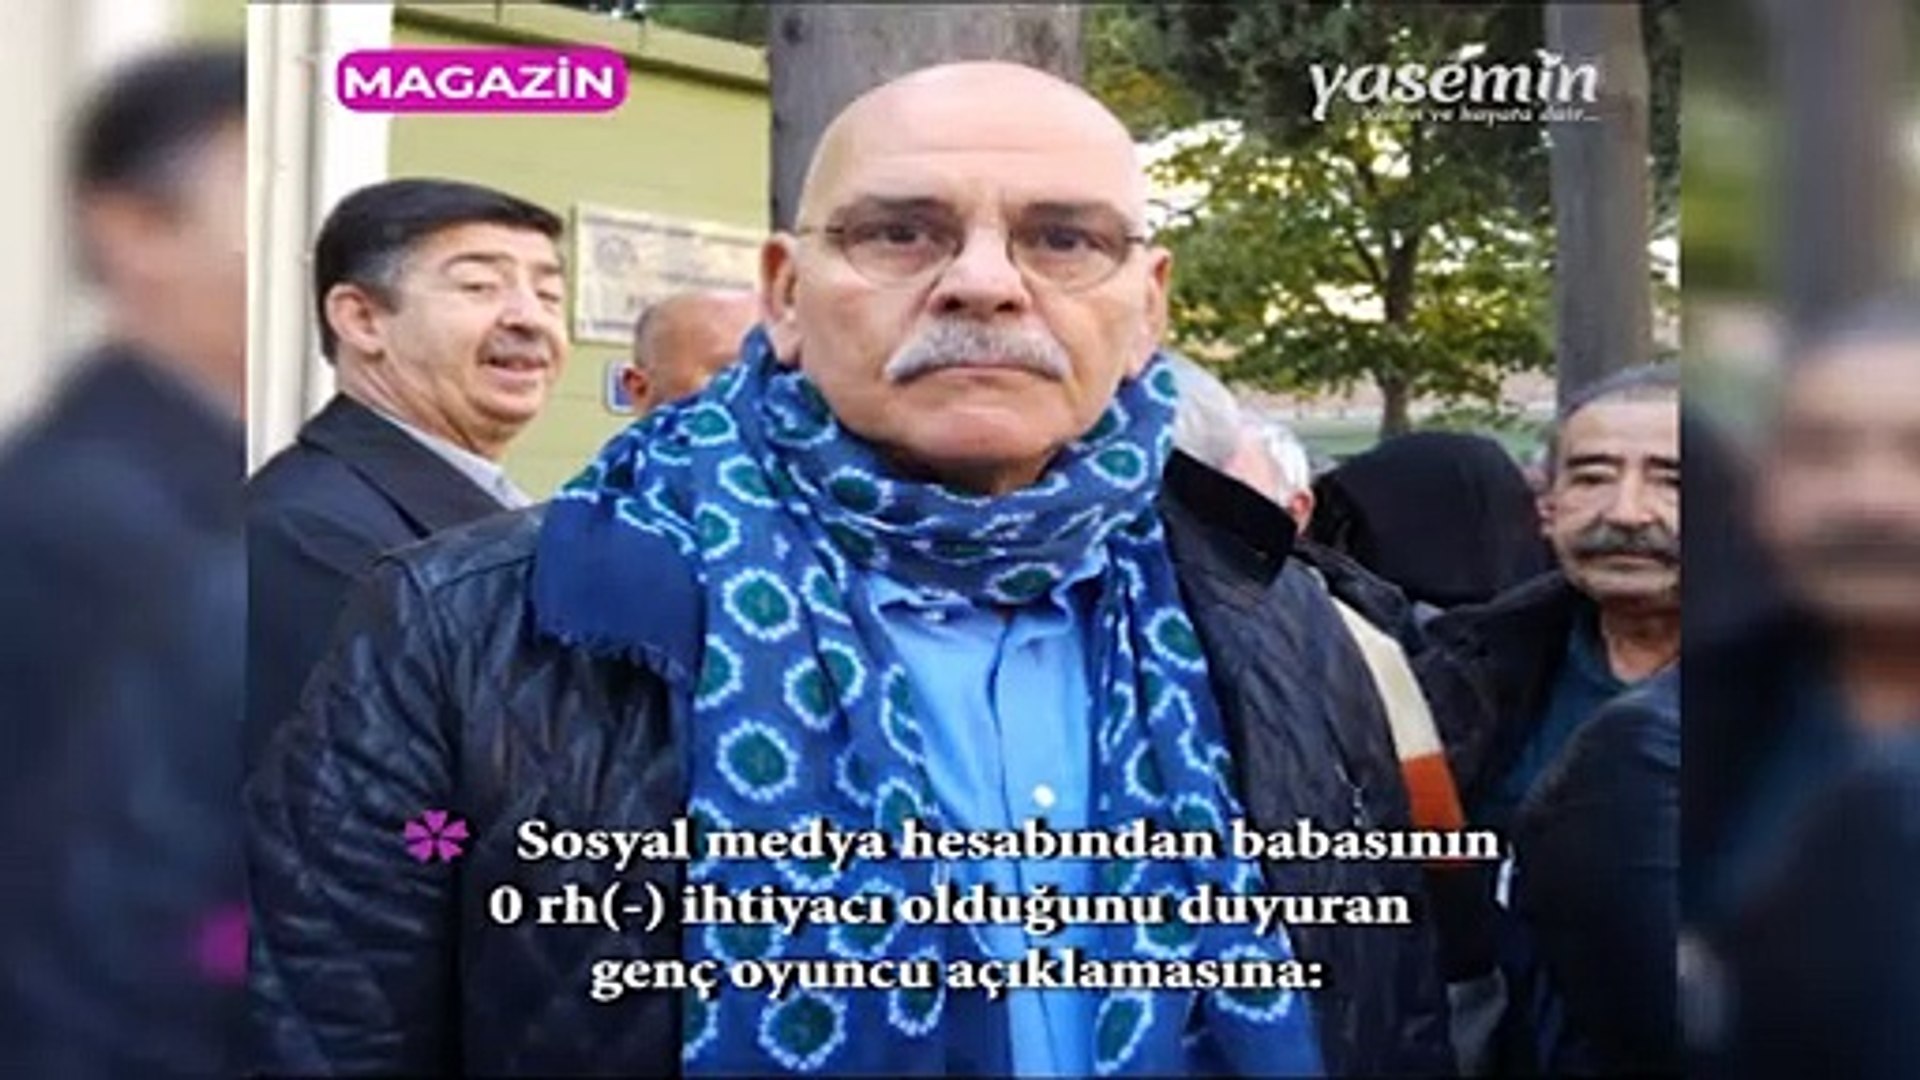 Kalp krizi geçiren Rasim Öztekin'in kızı Pelin Öztekin'den yeni açıklama! -  Dailymotion Video